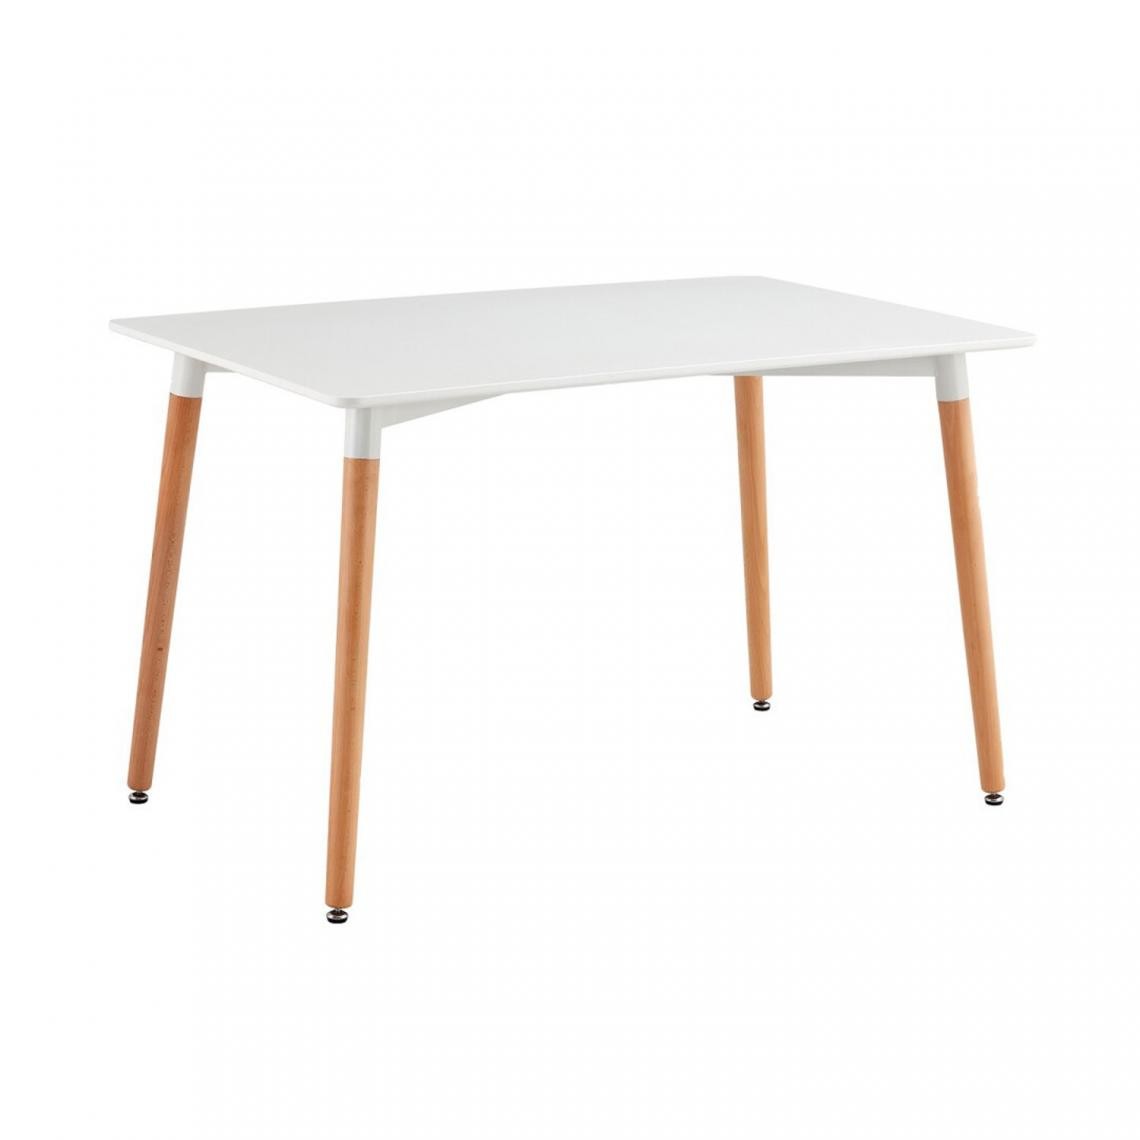 Pegane - Table à manger en bois Blanc et pieds coloris chêne - Profondeur 80 x Longueur 120 x Hauteur 74 cm - Tables à manger